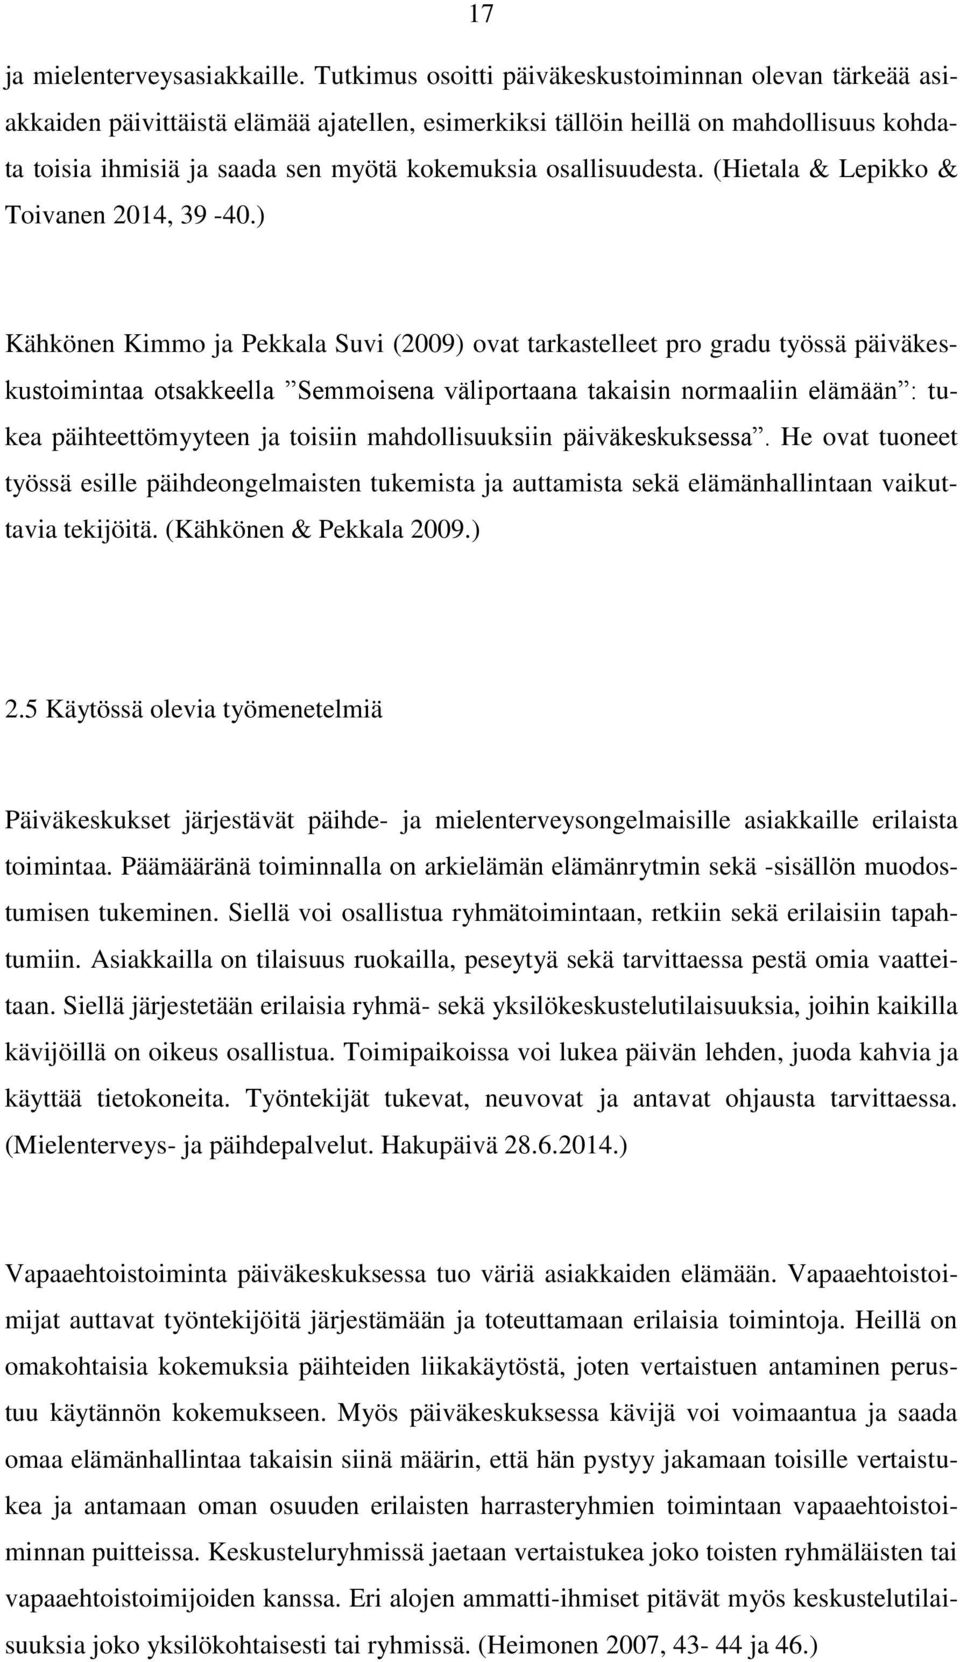 osallisuudesta. (Hietala & Lepikko & Toivanen 2014, 39-40.